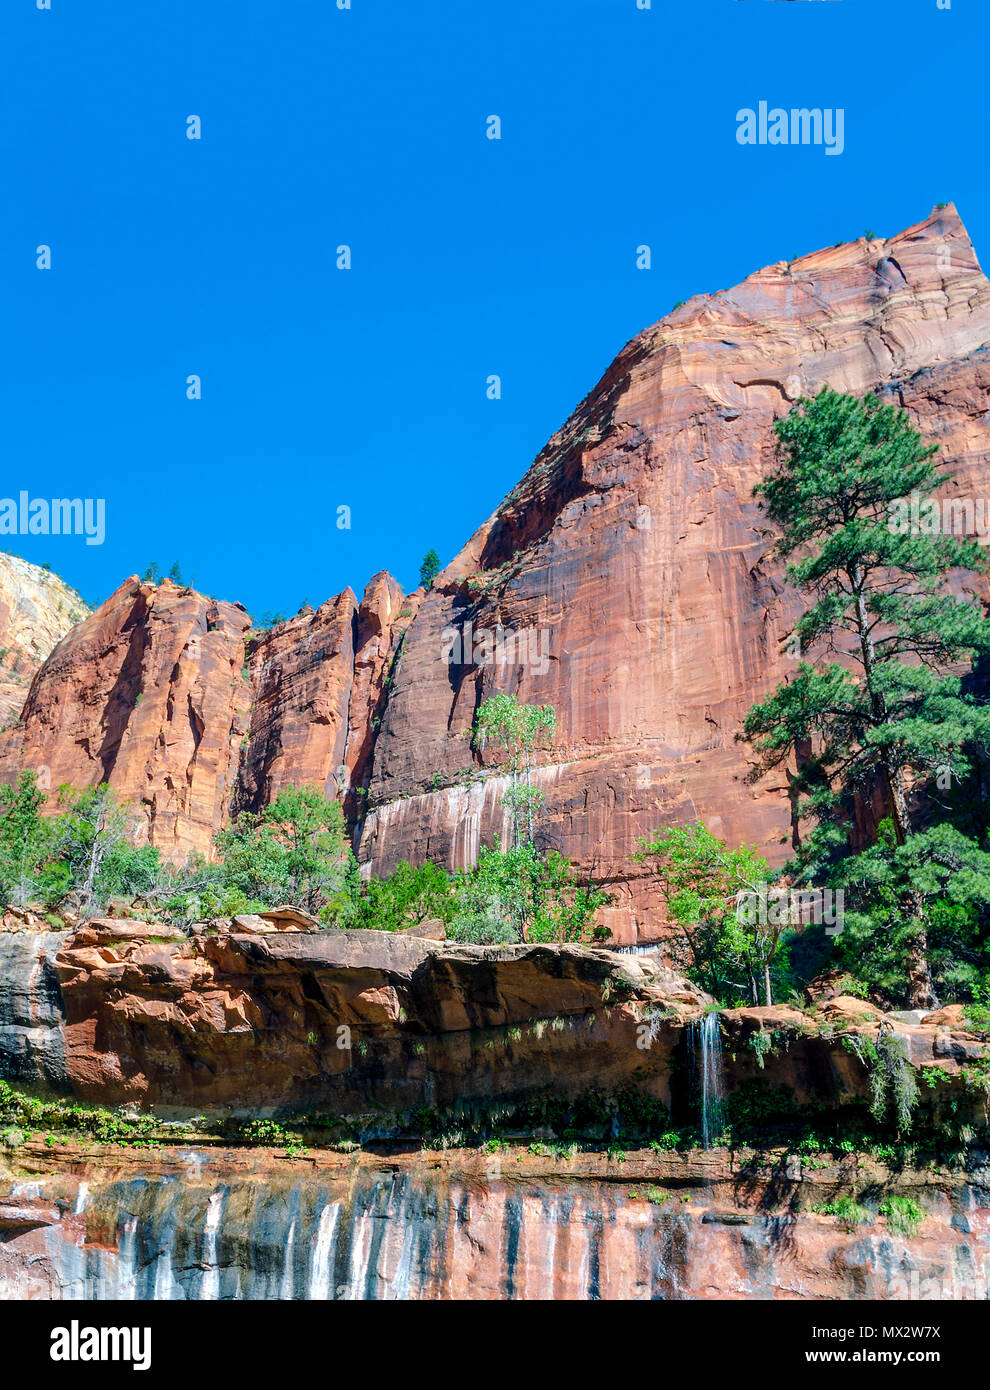 Arance grandi red rock mountain sotto il cielo blu chiaro con alti alberi verdi e valle. Foto Stock